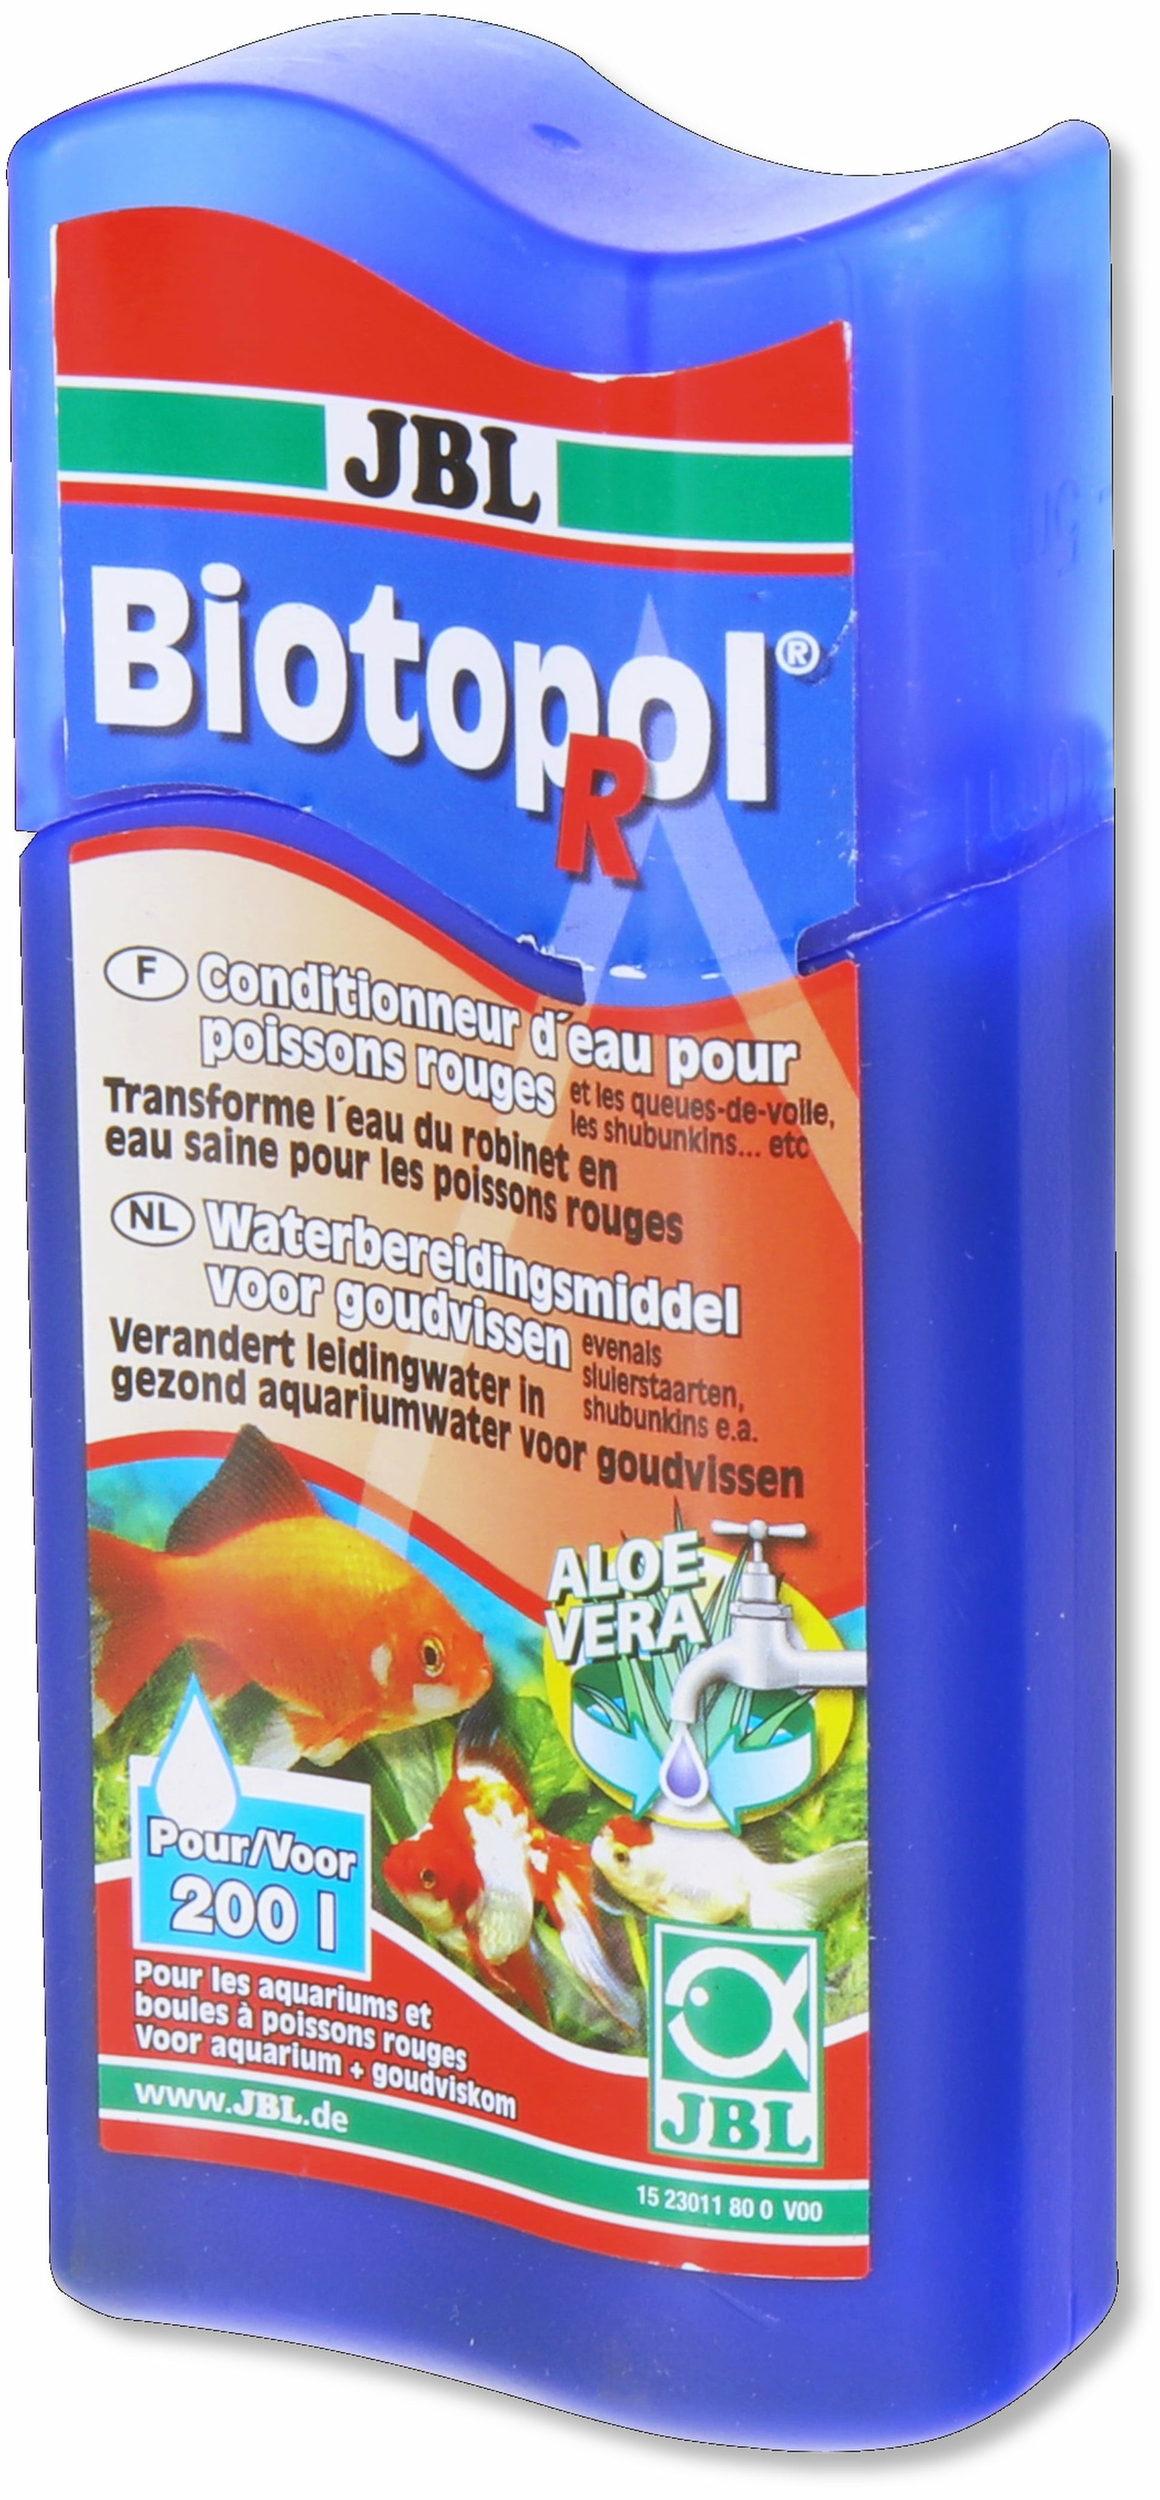 https://media.cdnws.com/_i/1792/24314/2685/17/jbl-biotopol-r-100-ml-conditionneur-d-eau-du-robinet-pour-poissons-rouges-min.jpeg